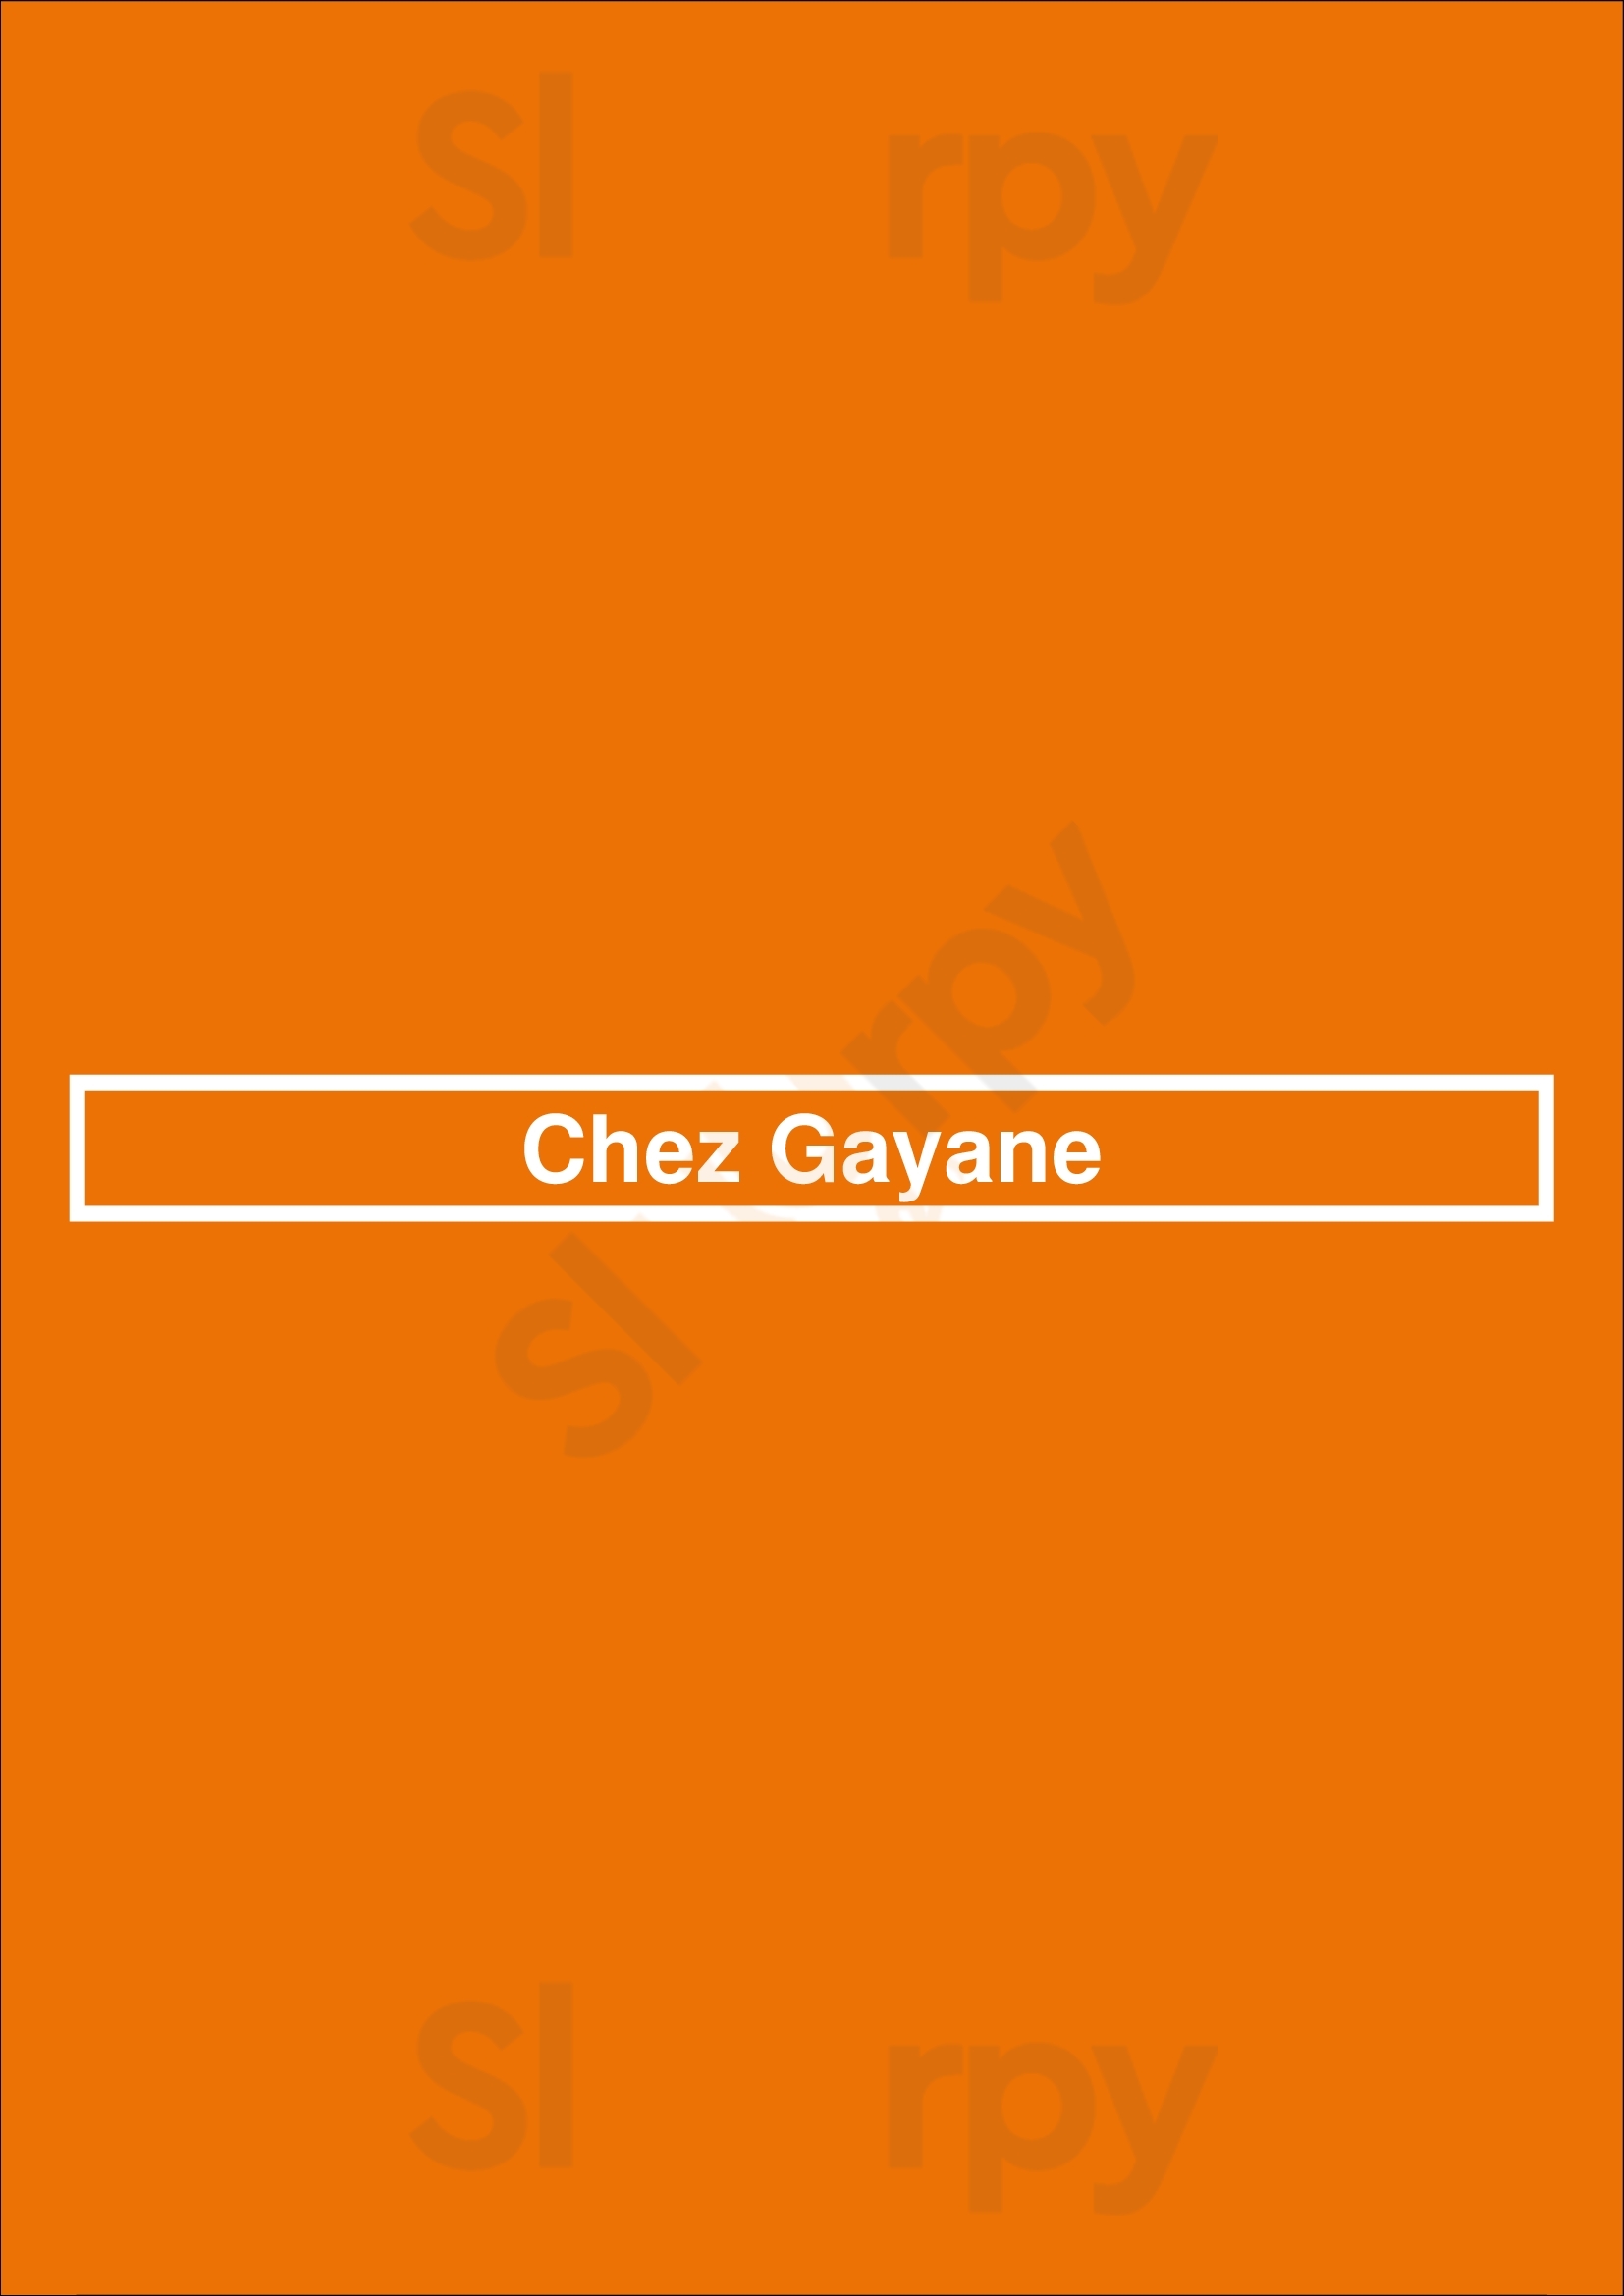 Chez Gayane Valence Menu - 1